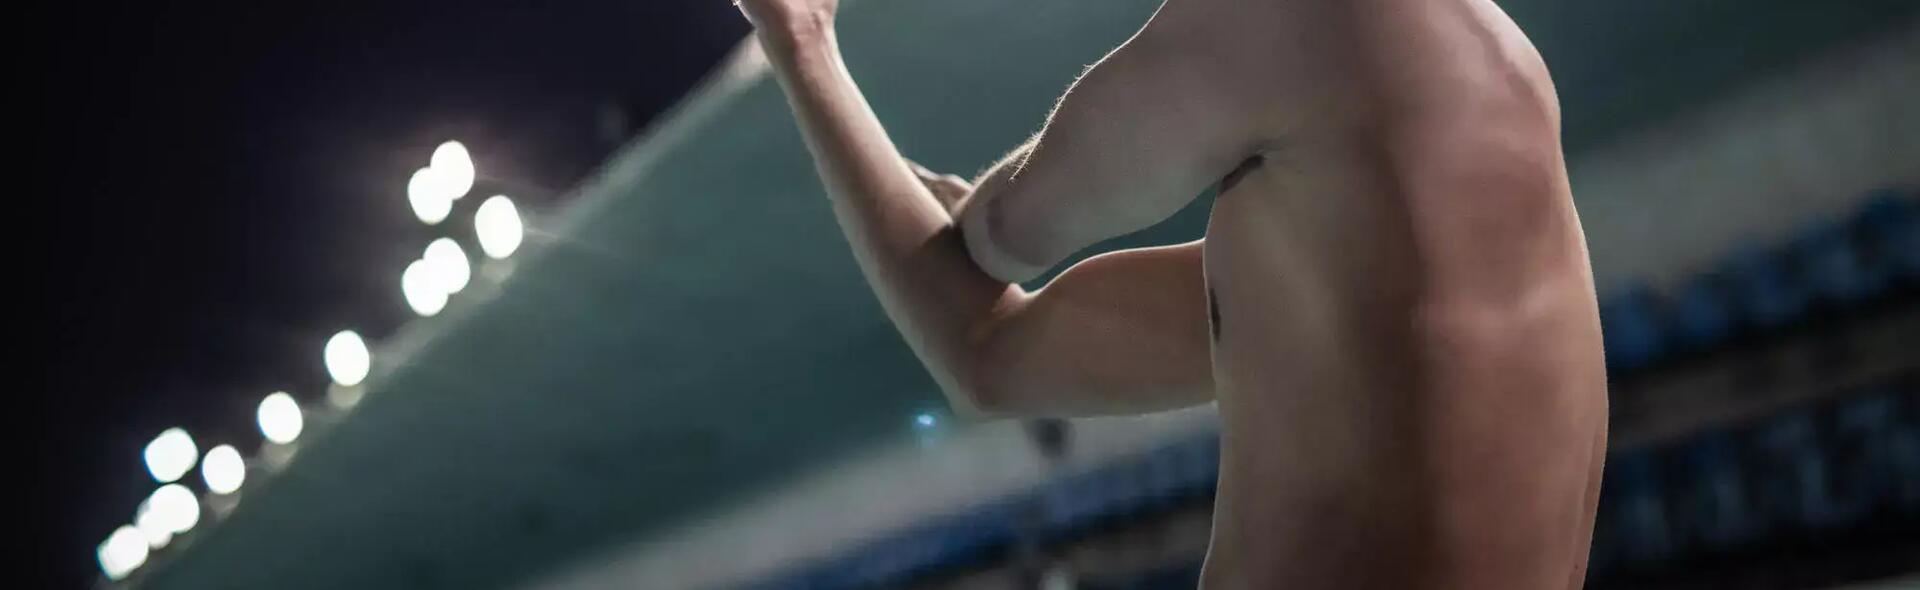 zwemmen-de-5-beste-oefeningen-om-je-armspieren-te-trainen